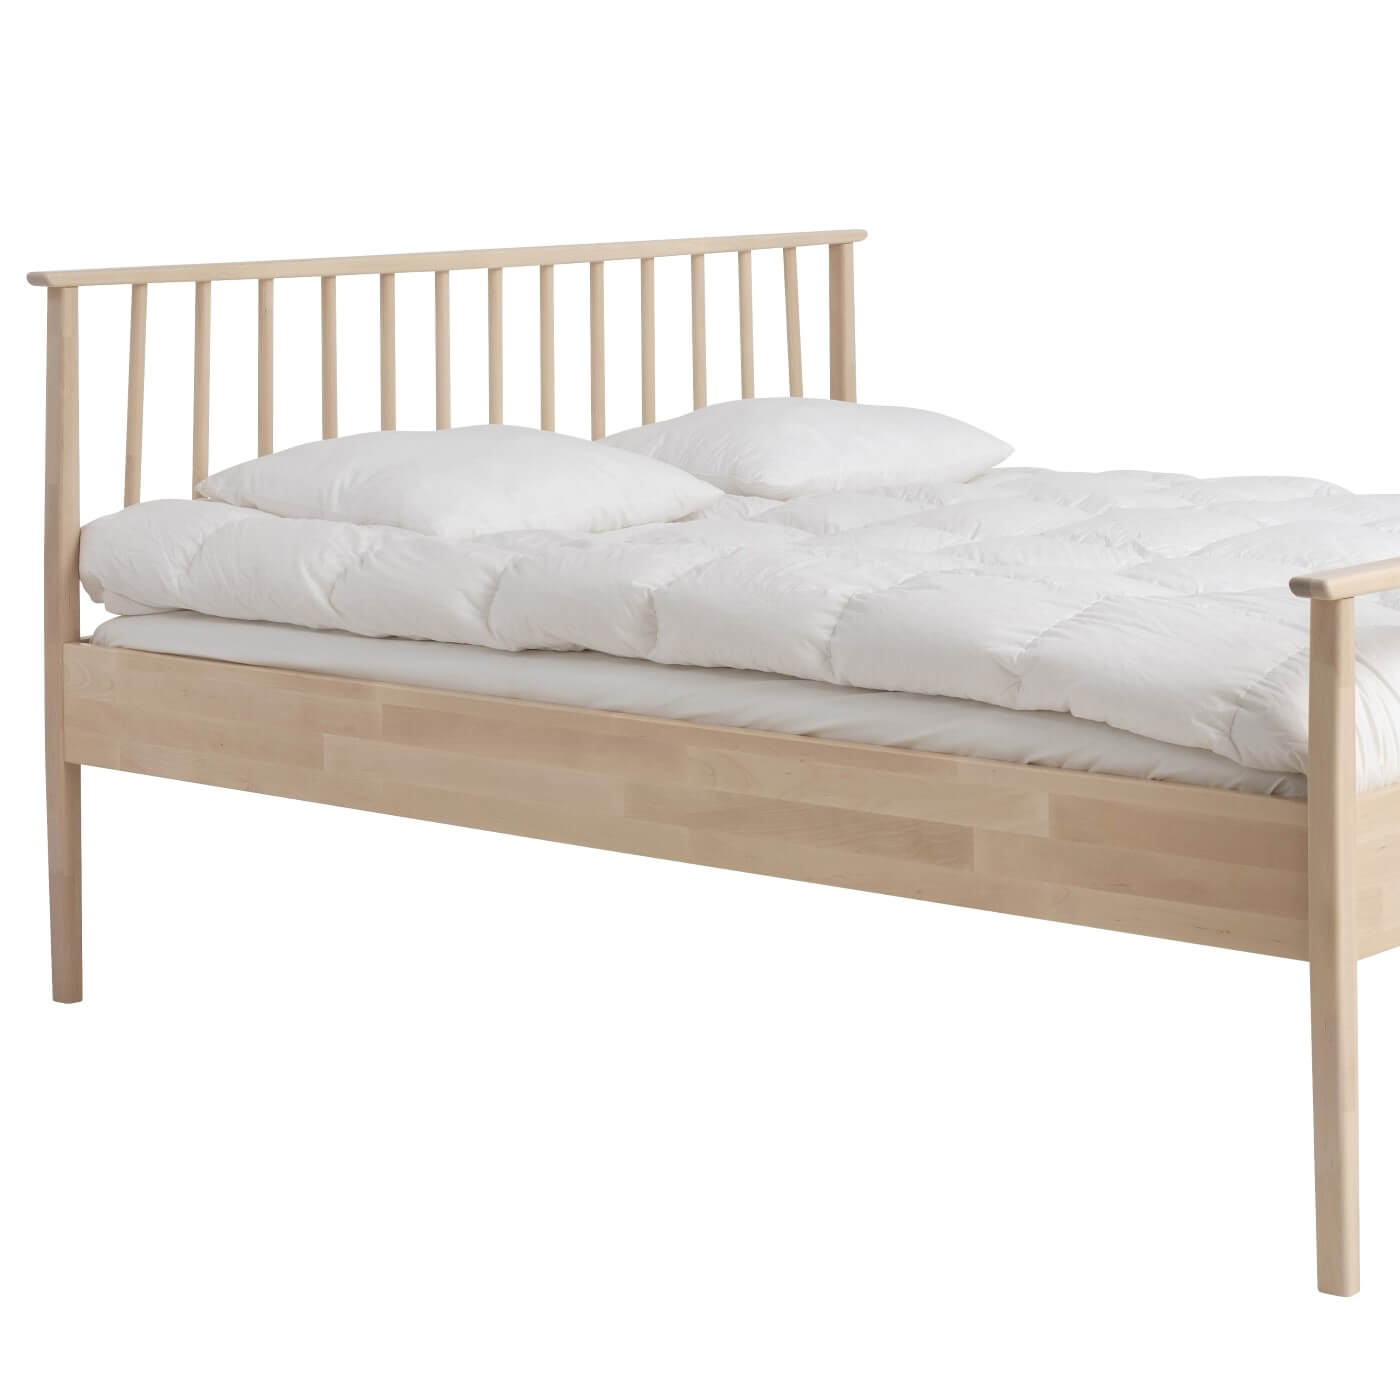 Łóżko drewniane nowoczesne NOEL. Fragment łóżka do sypialni 160x200 z drewnianym wysokim ażurowym szczytem i leżącą białą kołdrą z poduszkami. Nowoczesny skandynawski design